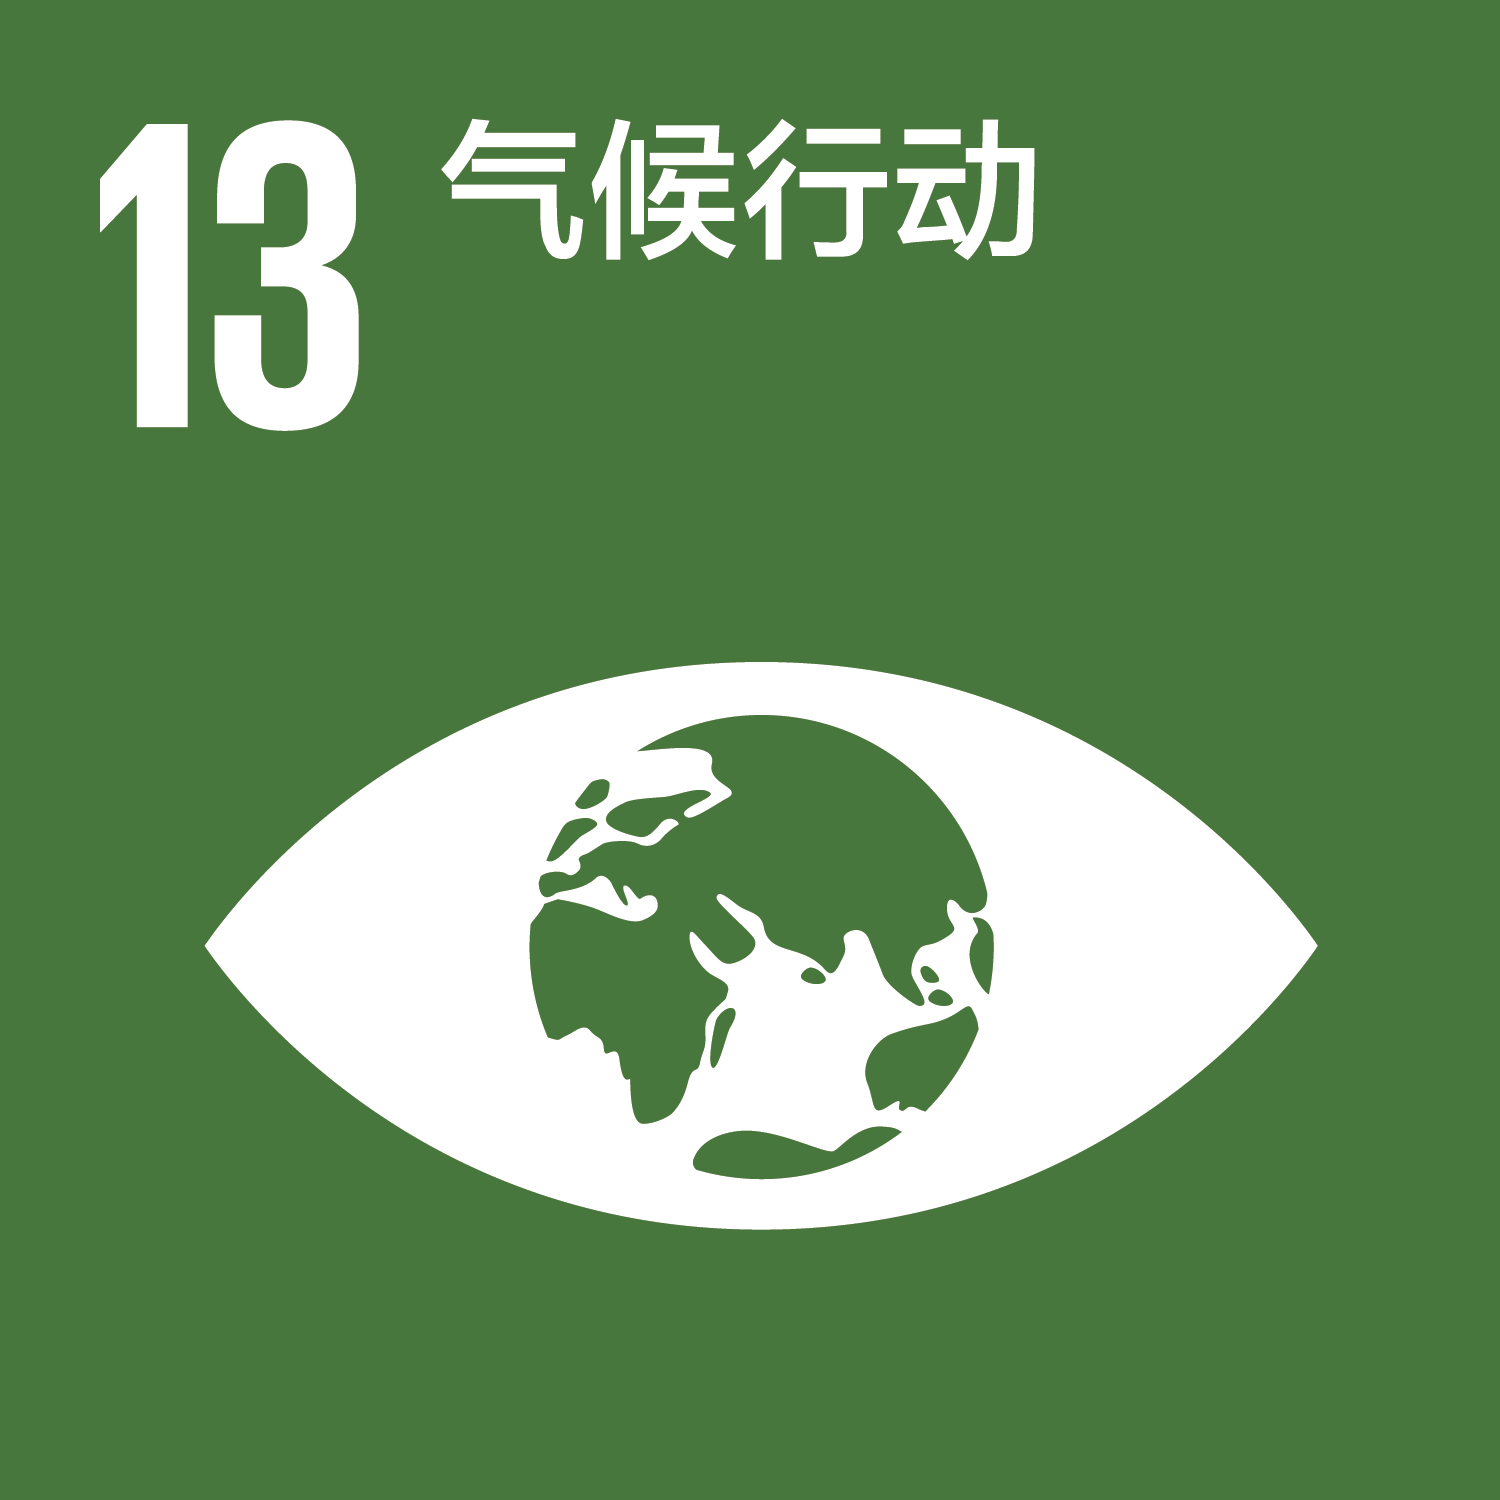 可持续发展目标-13气候行动